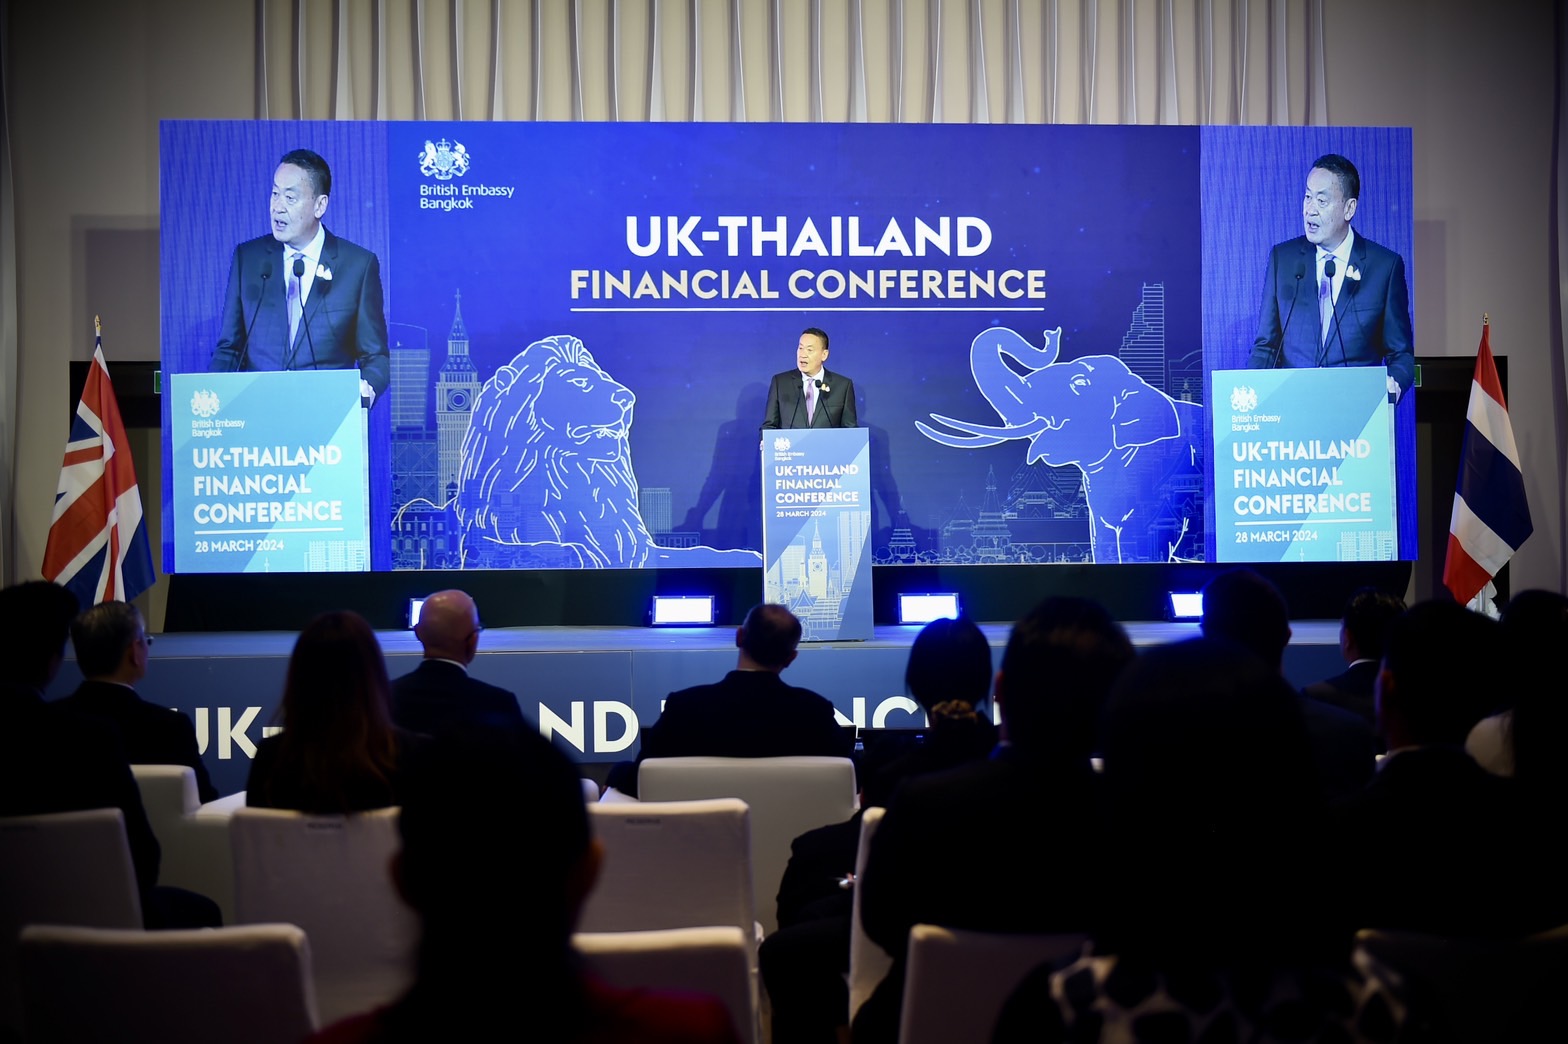 นายกฯ กล่าวปาฐกถางาน UK-Thailand Financial Conference ย้ำบทบาทสำคัญของภาคการเงินต่อการเติบโตทางเศรษฐกิจ